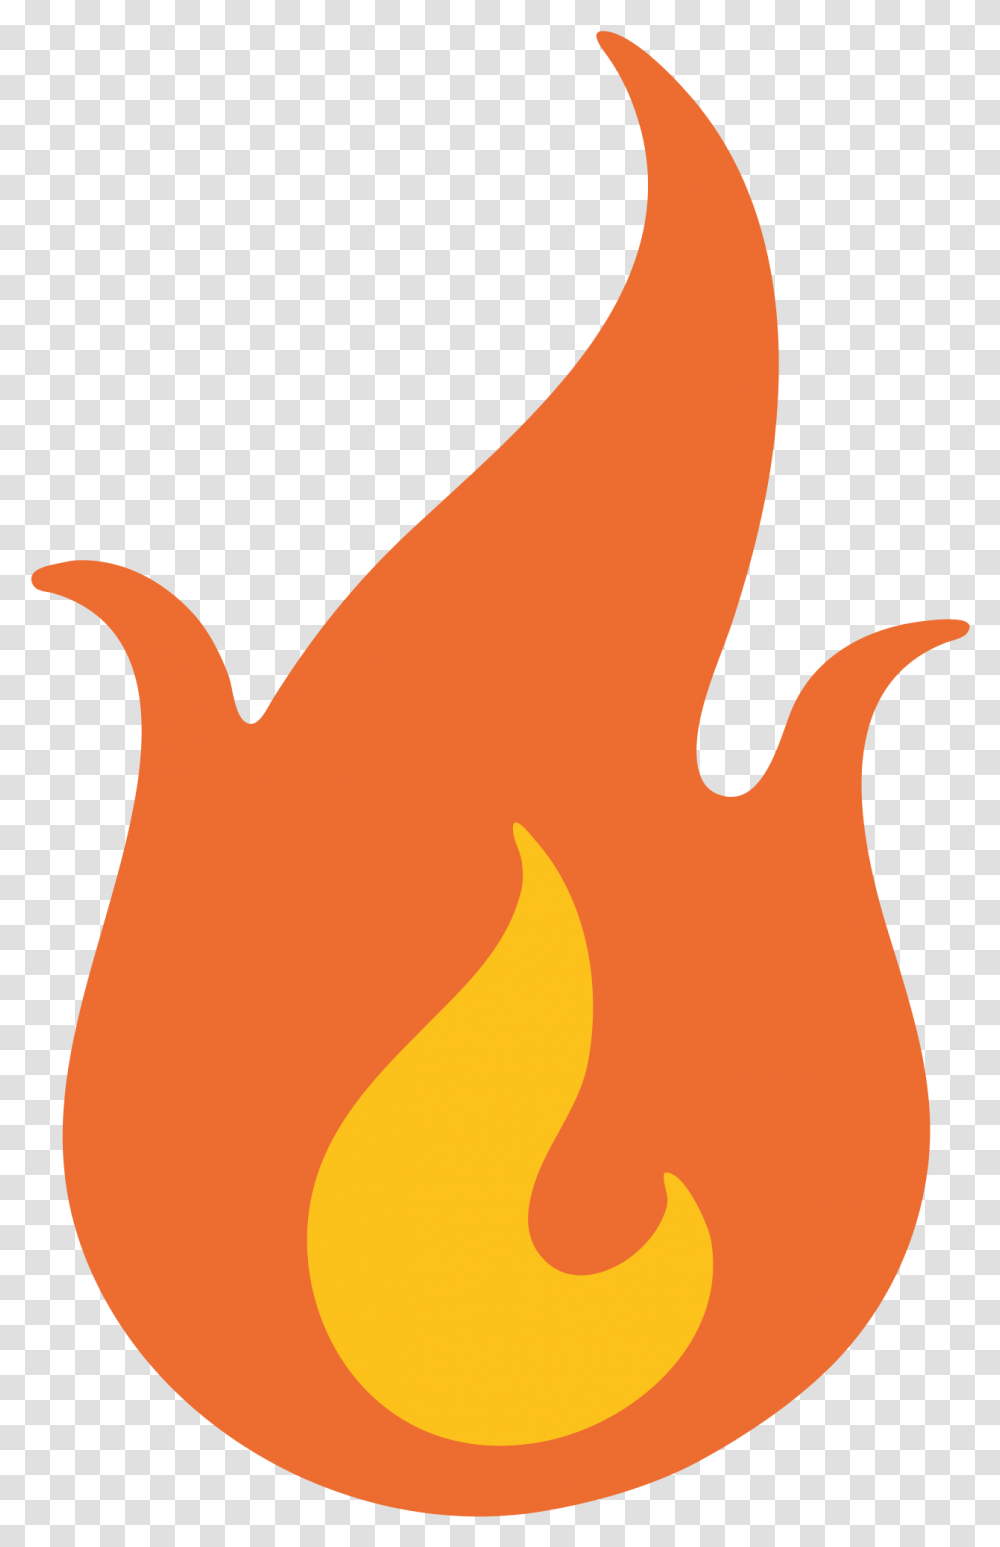 Fire Emoji 8 Image Lit Fire Emoji, Flame, Light, Bonfire Transparent Png